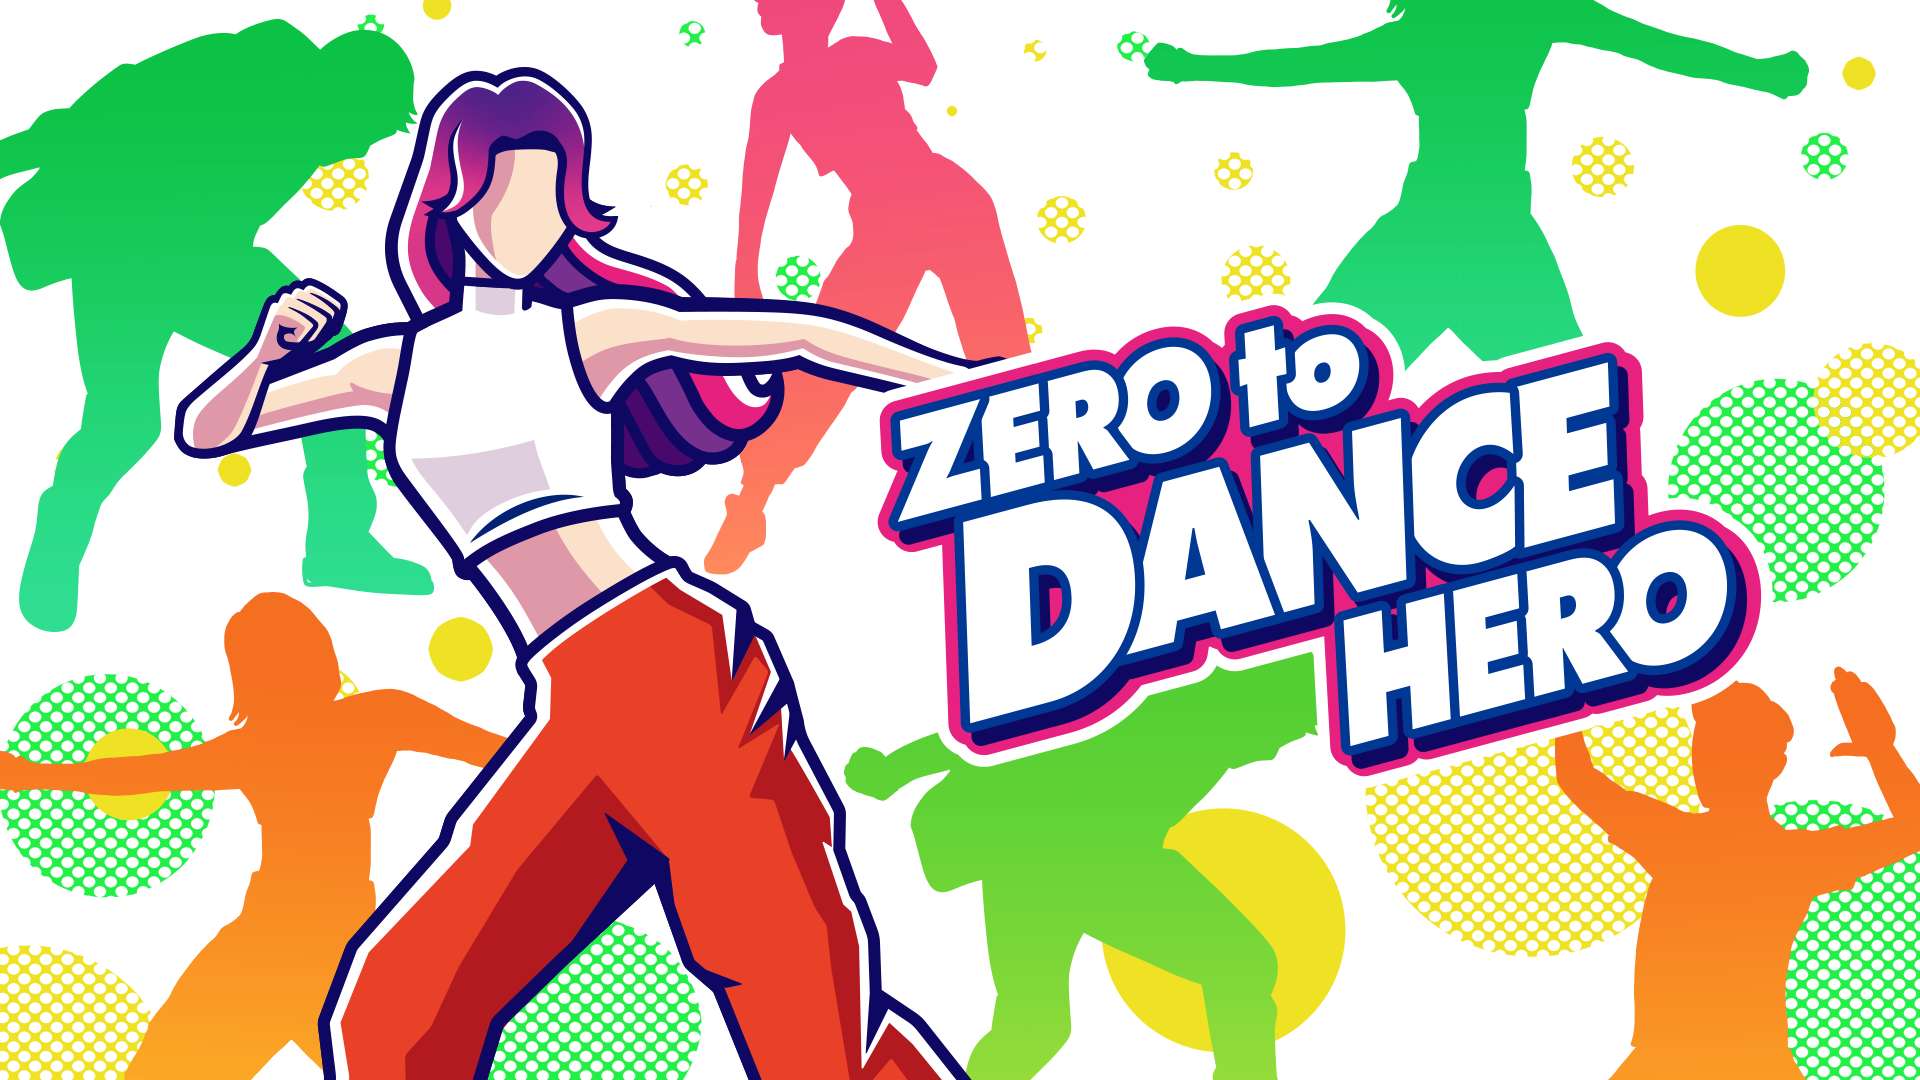 Zero to Dance Hero